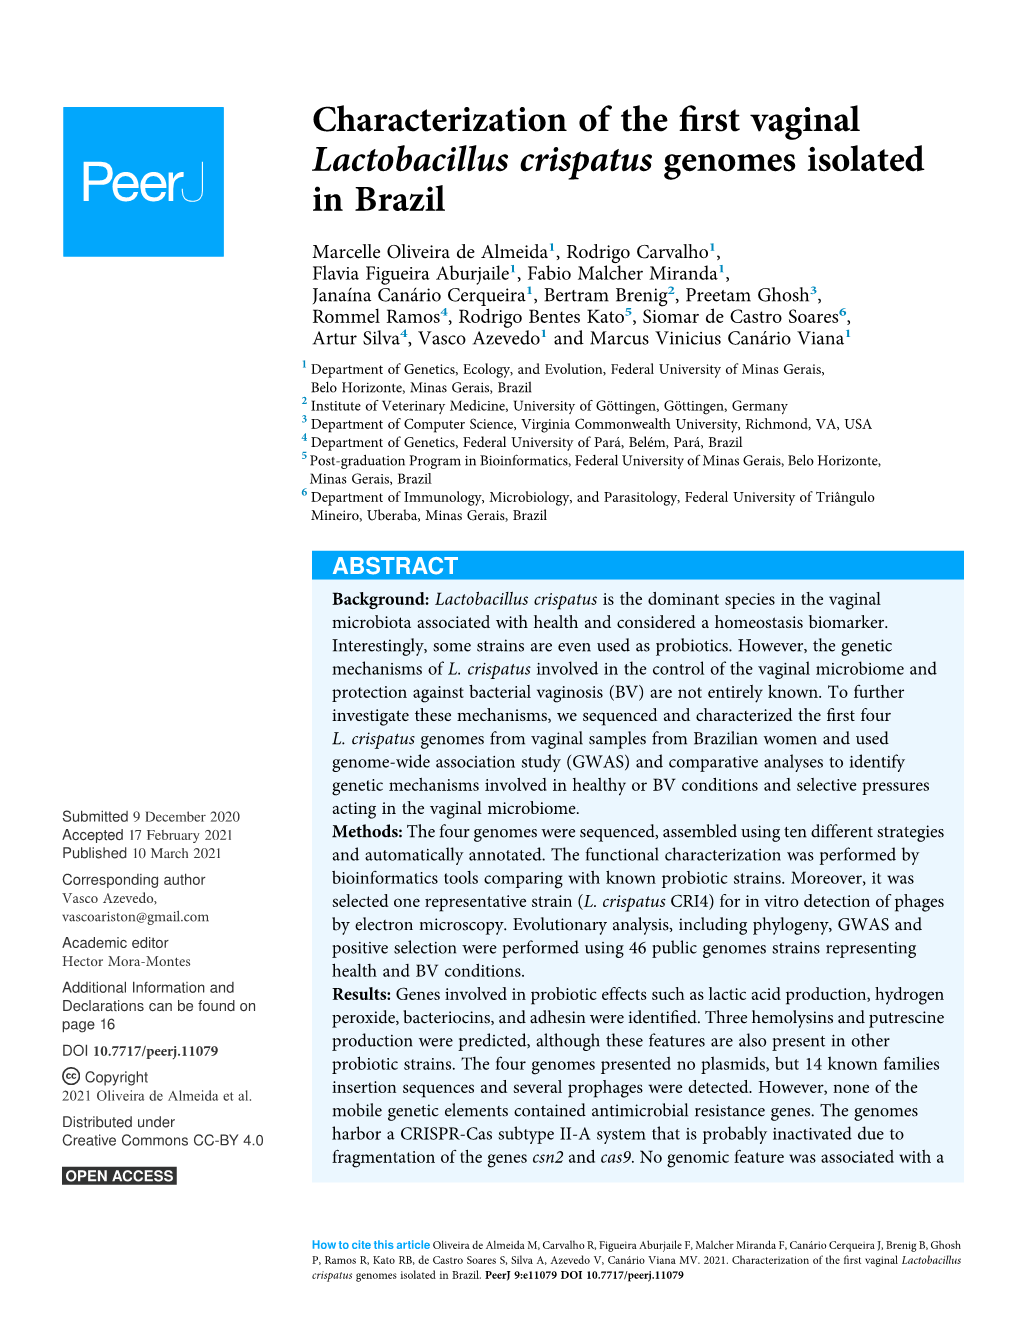 Characterization of the First Vaginal Lactobacillus Crispatus Genomes